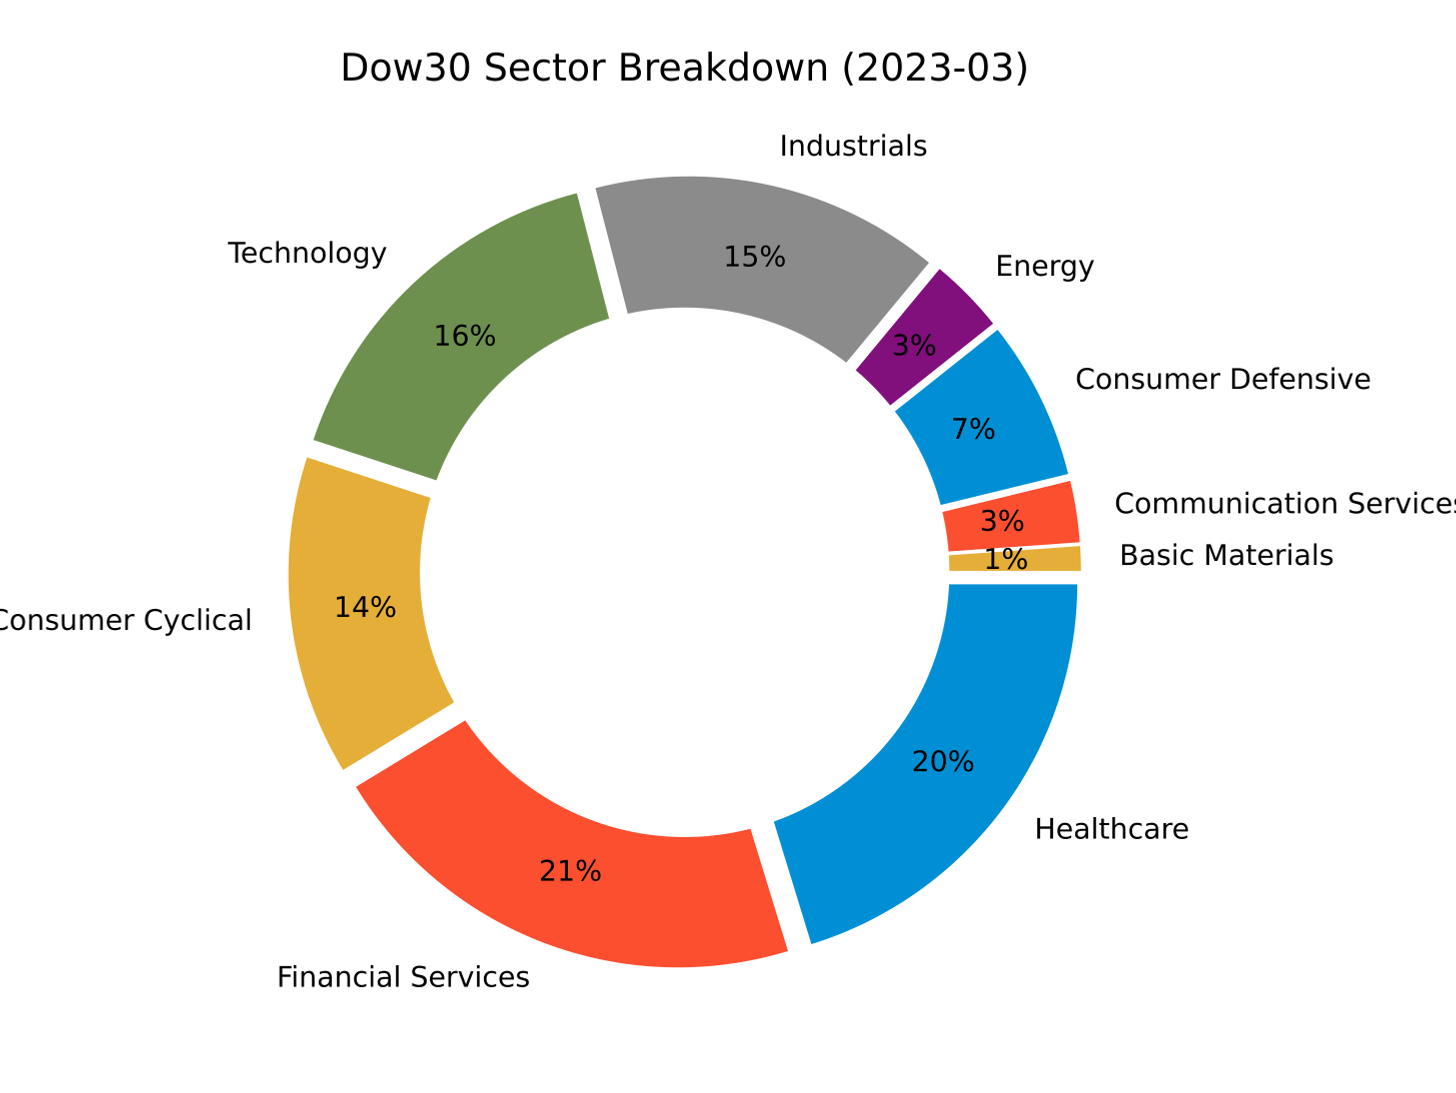 Dow sector breakdown (2023-03)